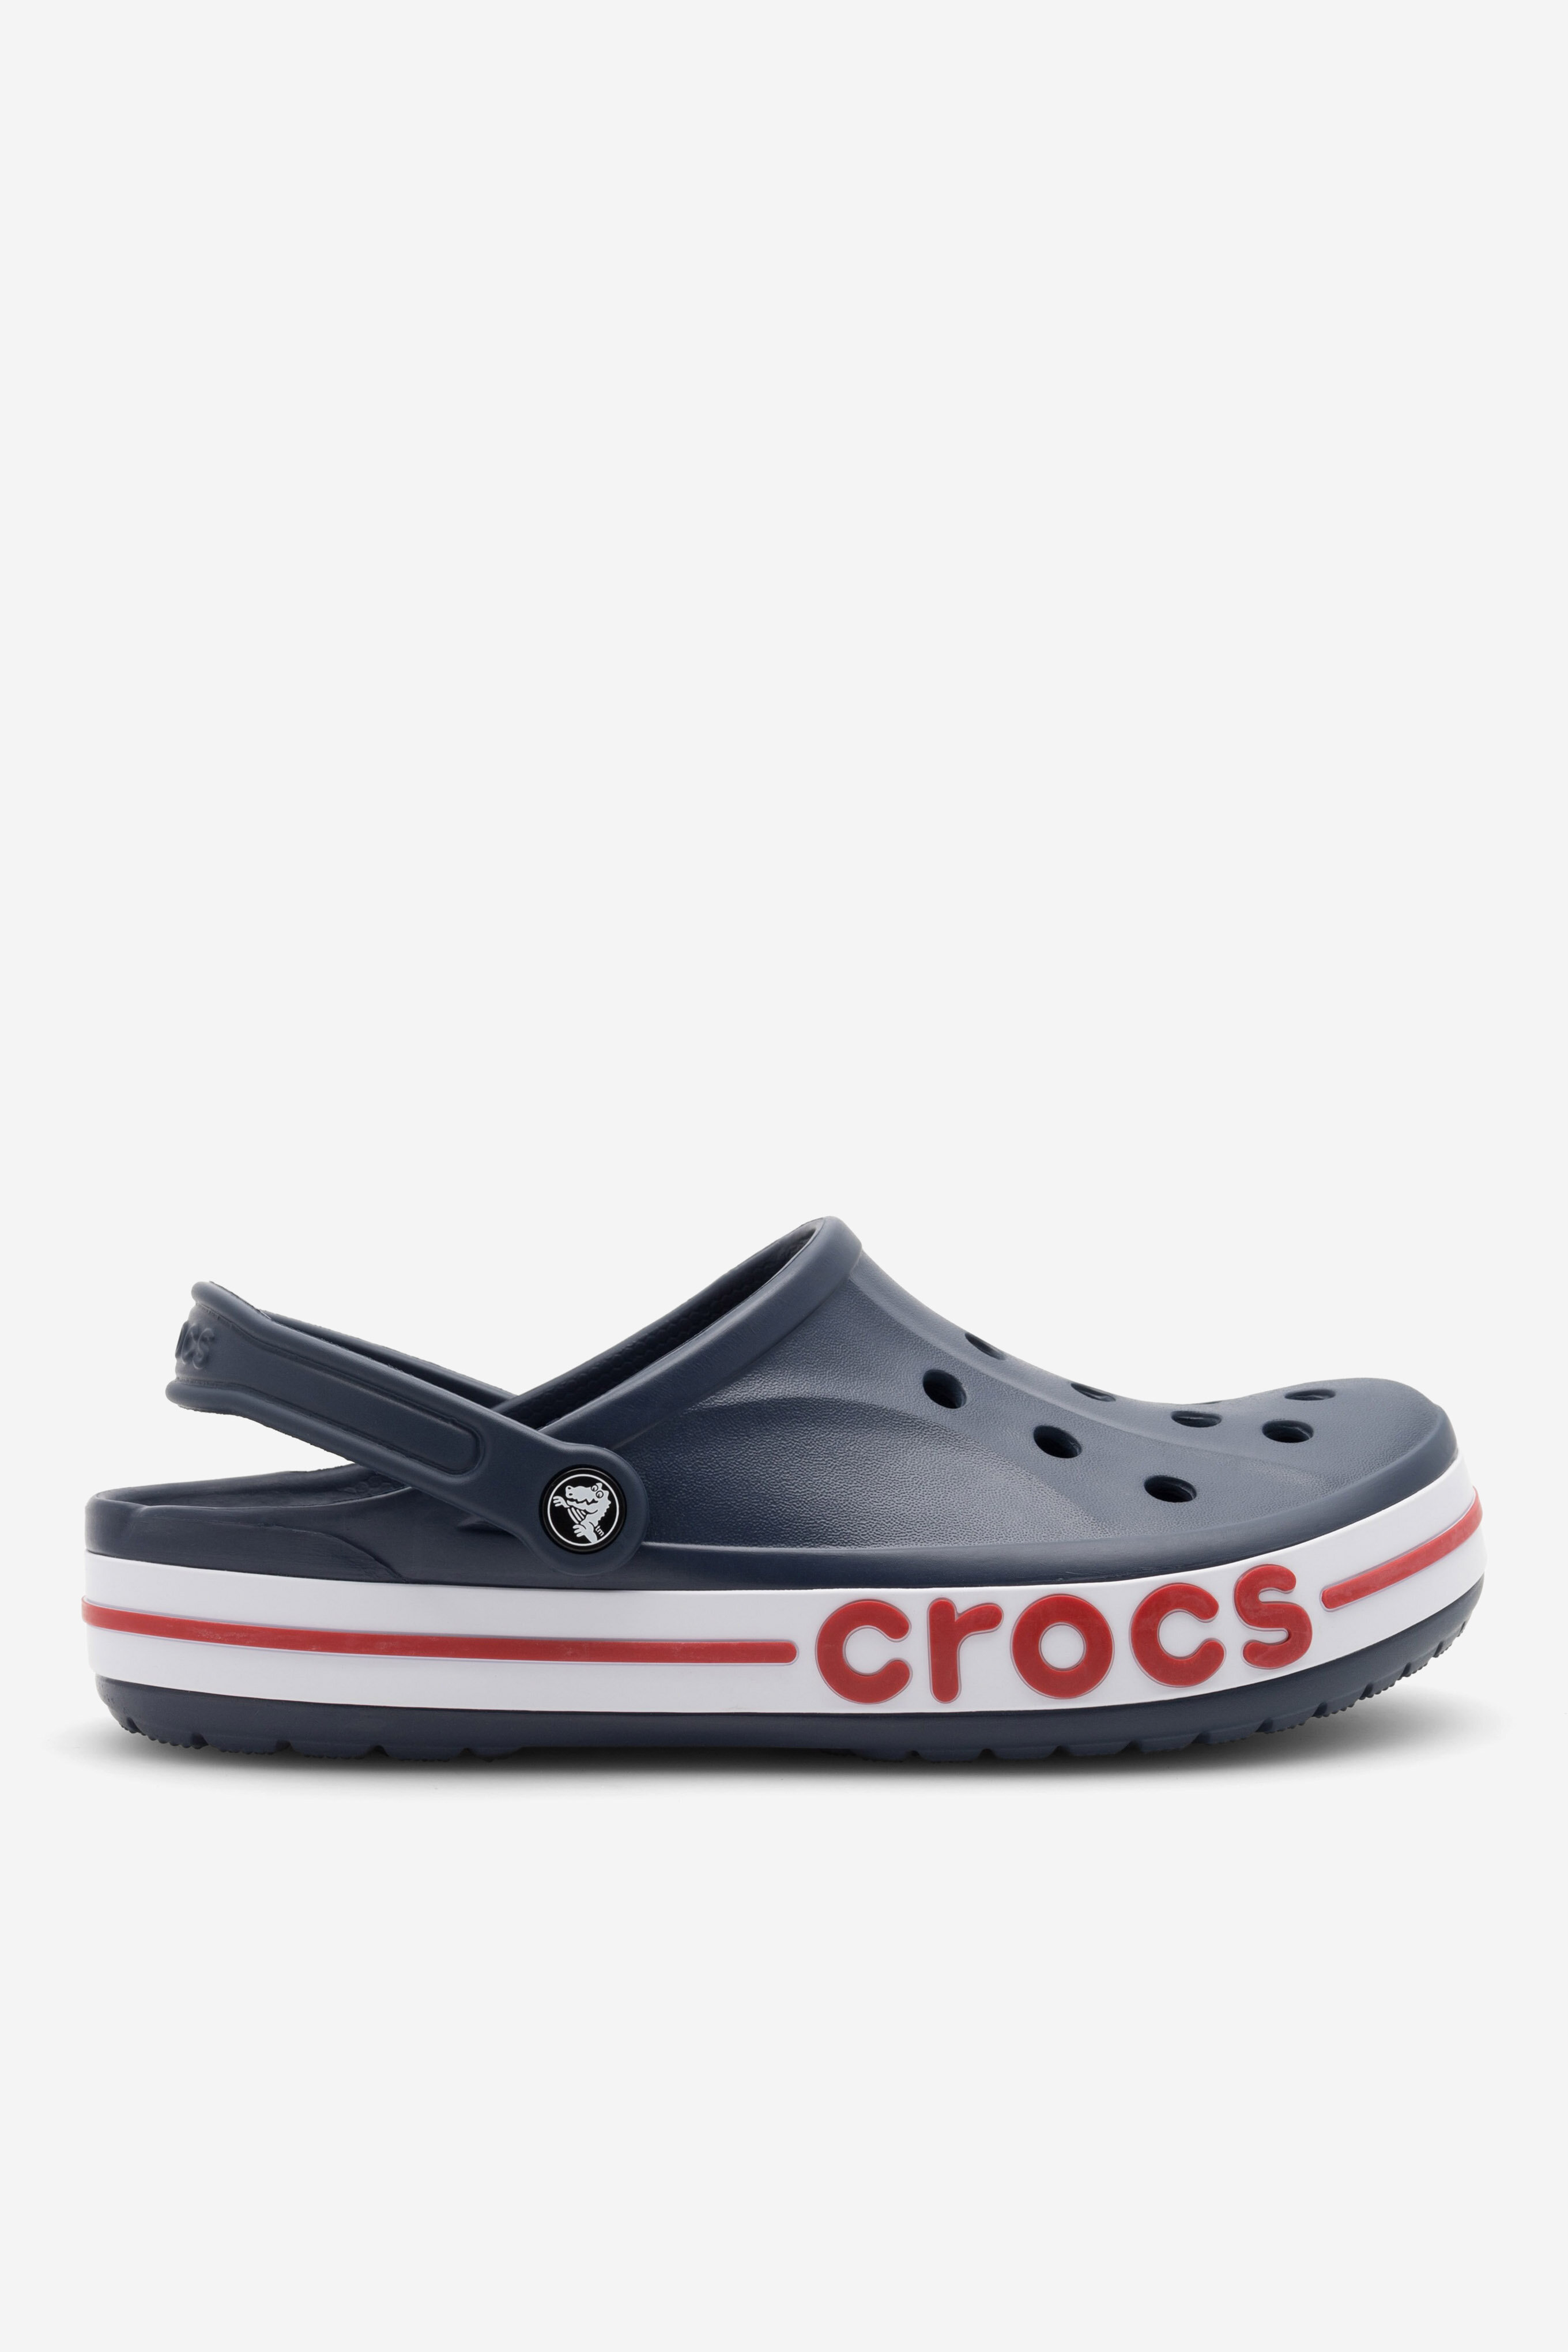 Strandpapucs Crocs